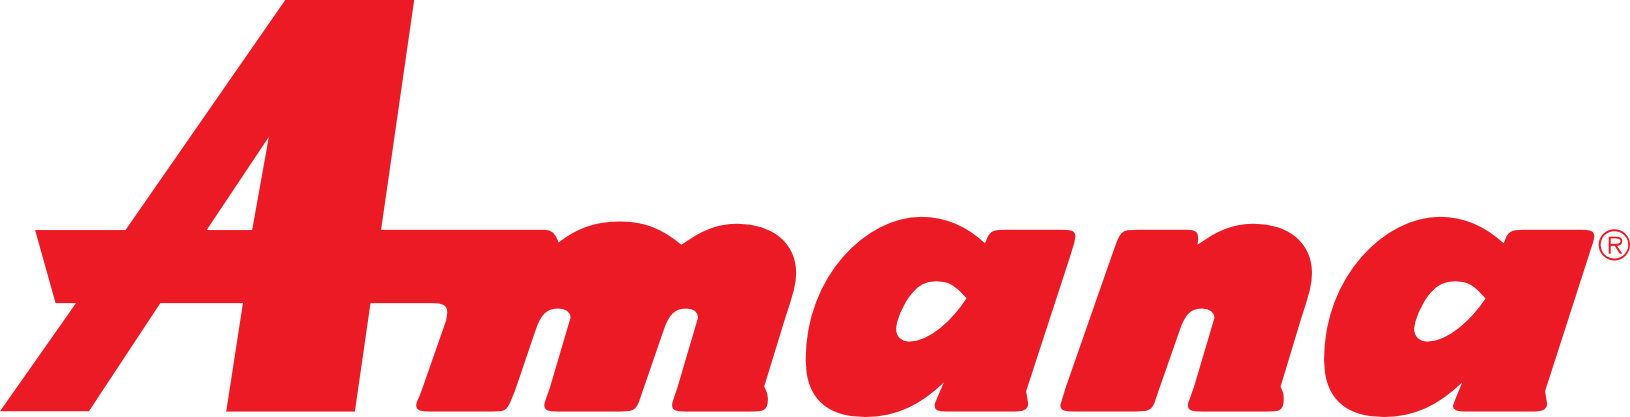 Logo Amana